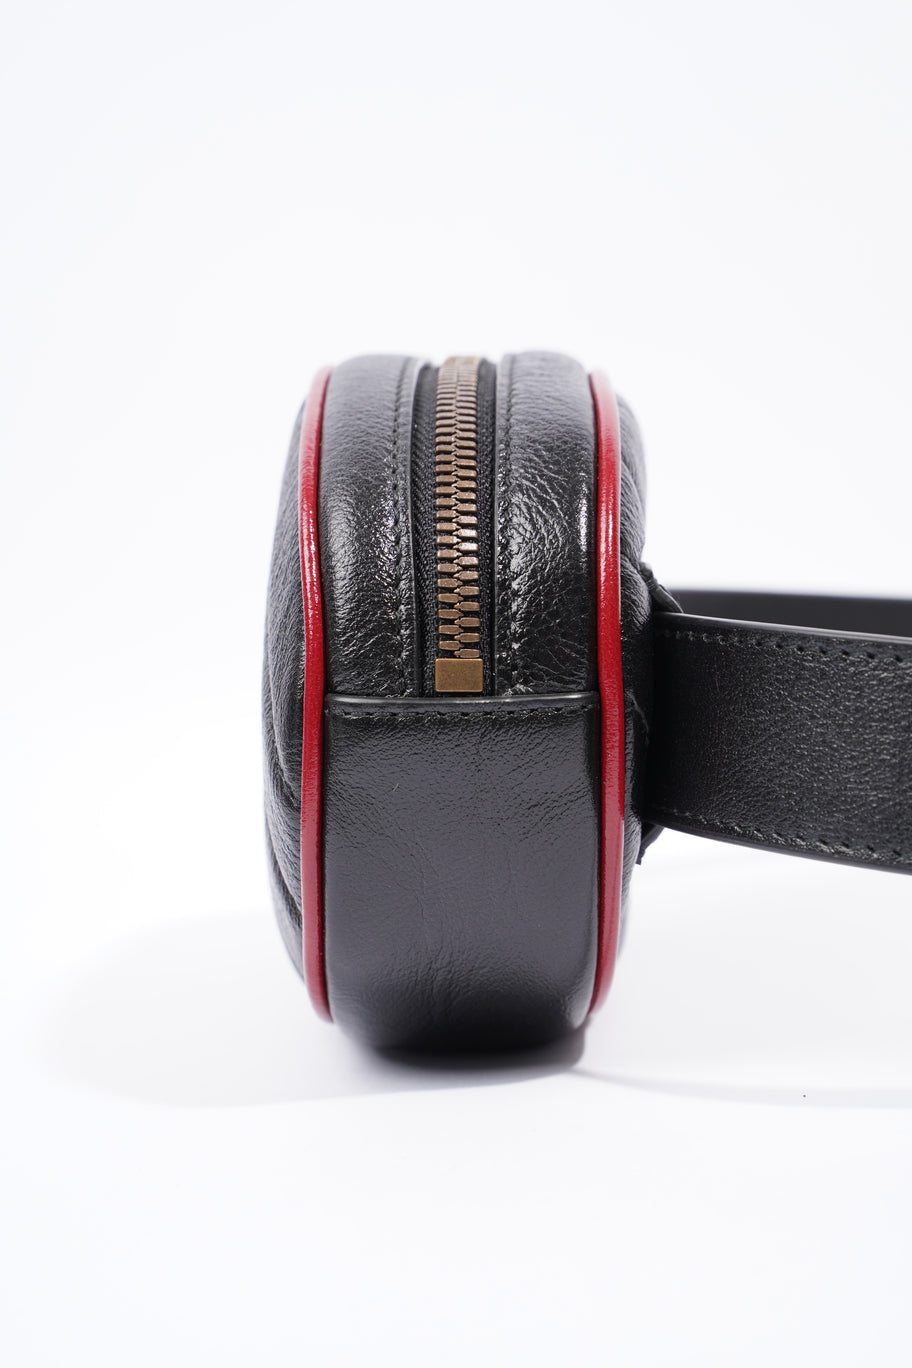 Marmont Belt Bag Black / Red Leather 75cm 30